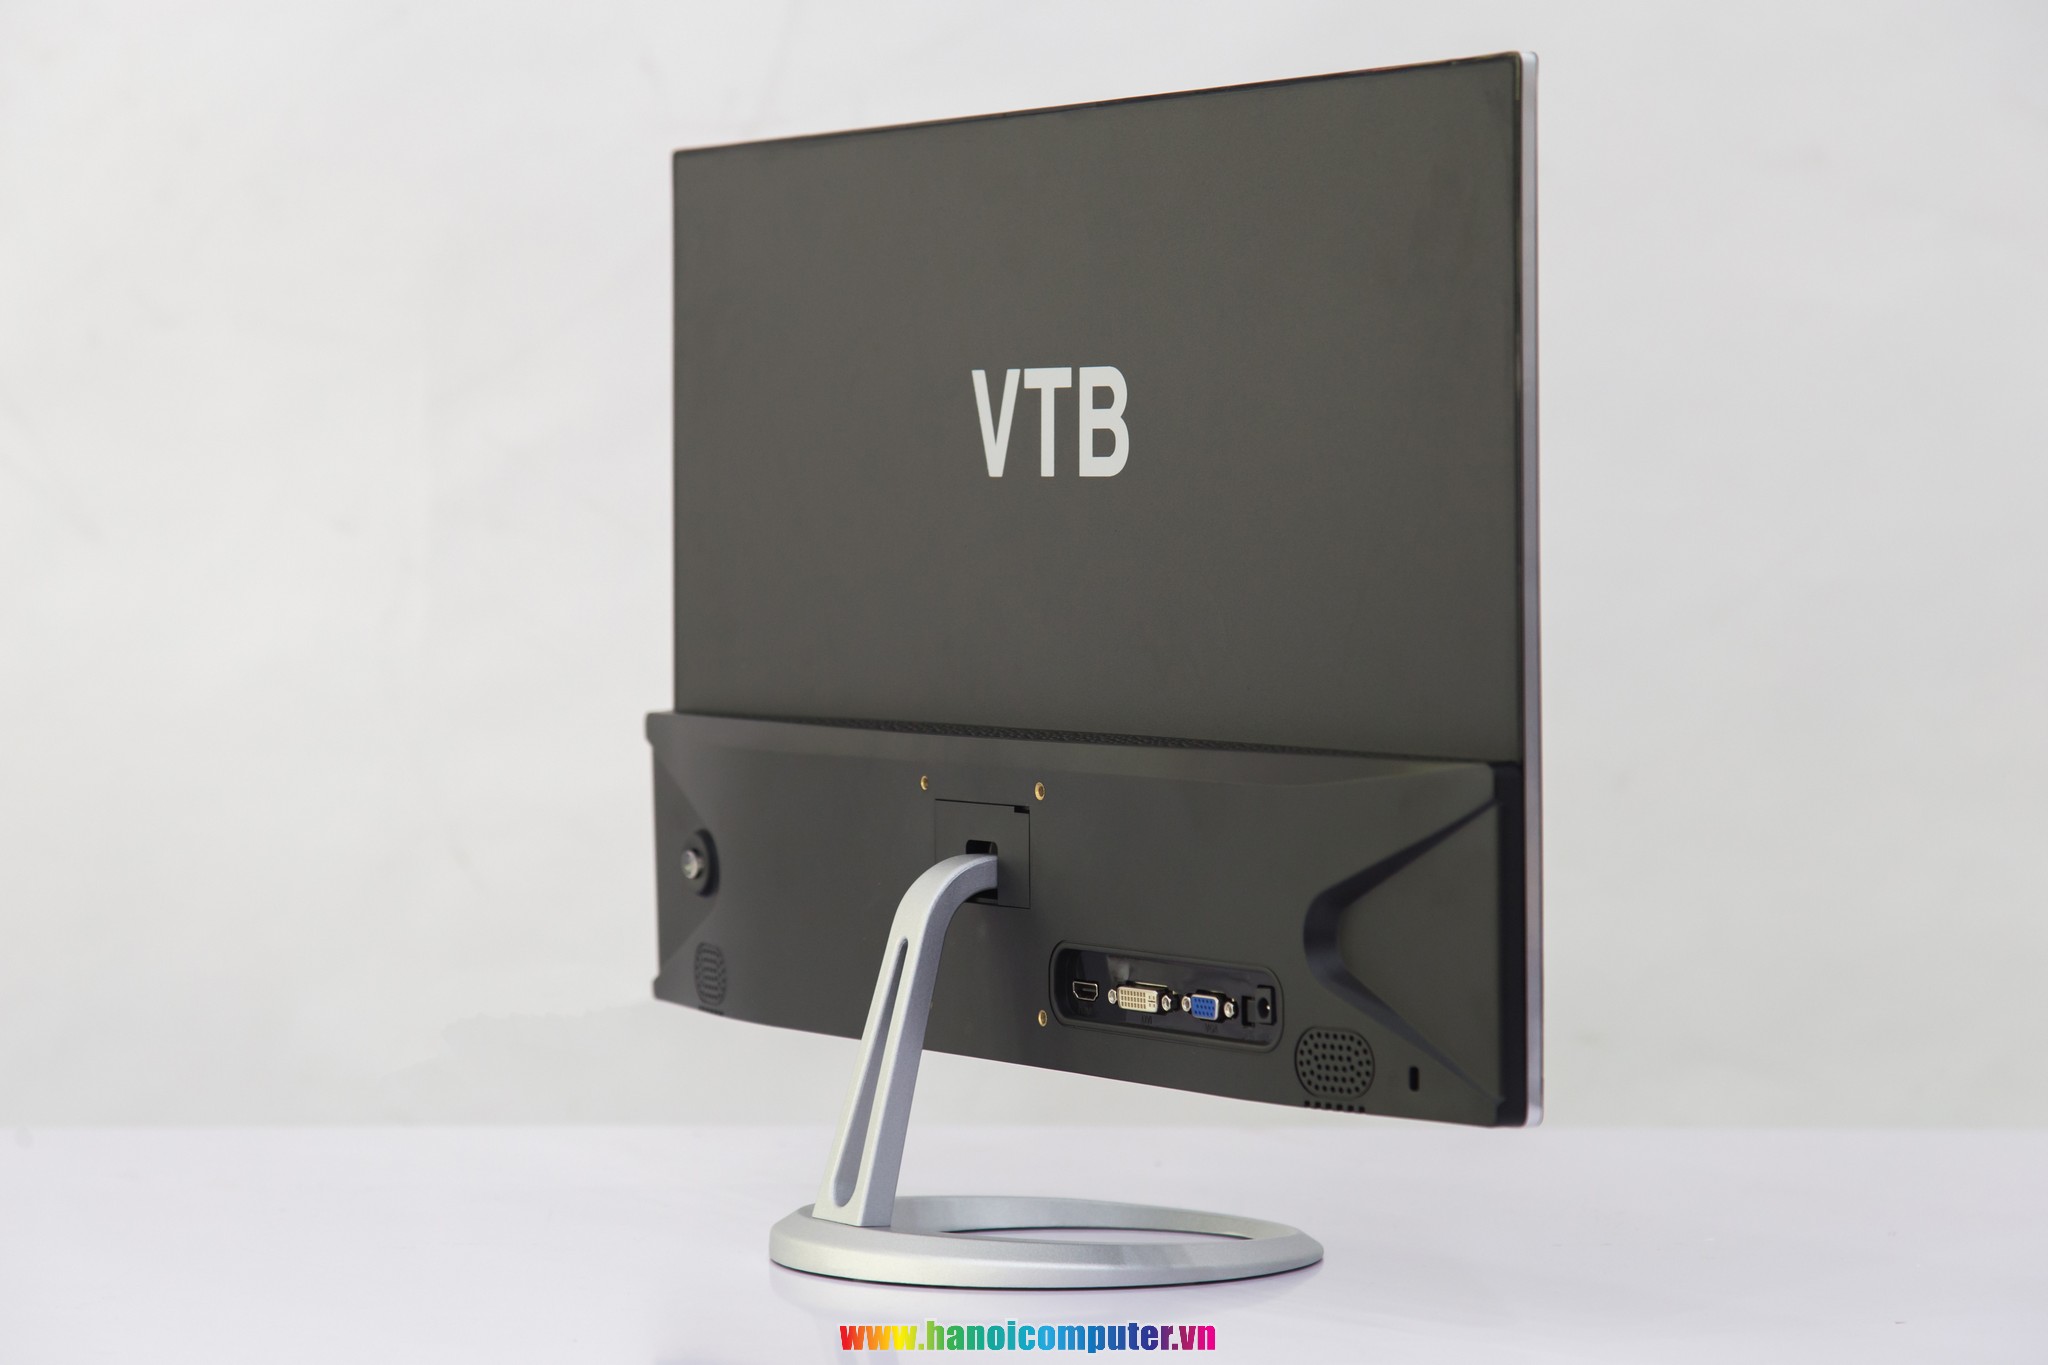 Màn hình 24 inches của VTB 12